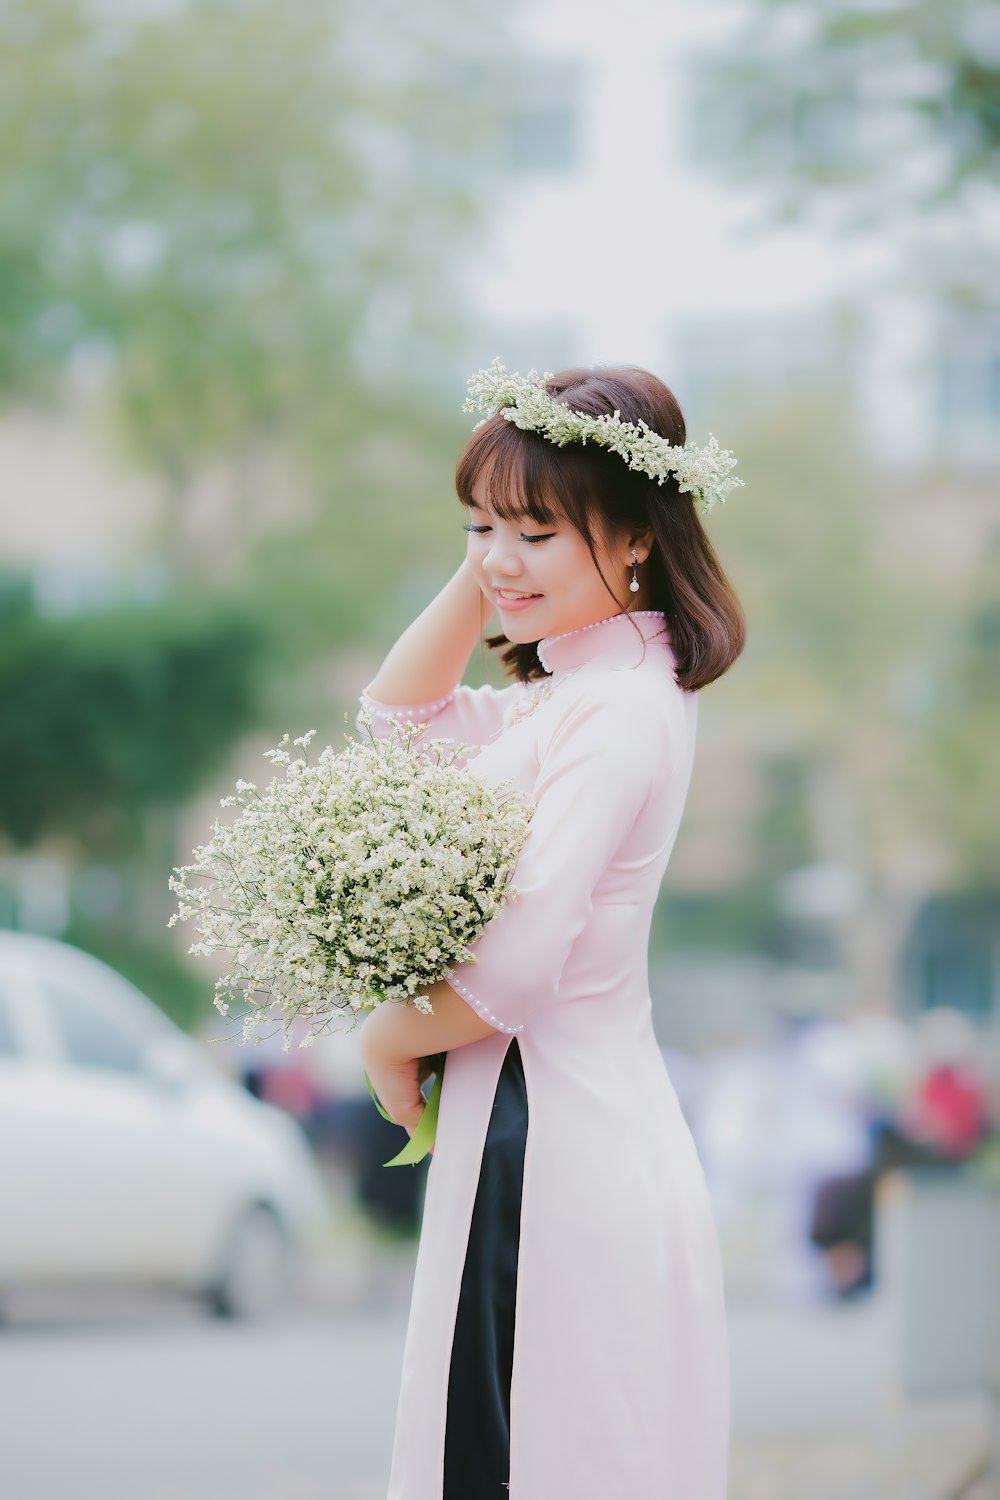 Frau hält ihr Haar, während sie einen weißblättrigen Blumenstrauß in der Fokusfotografie trägt